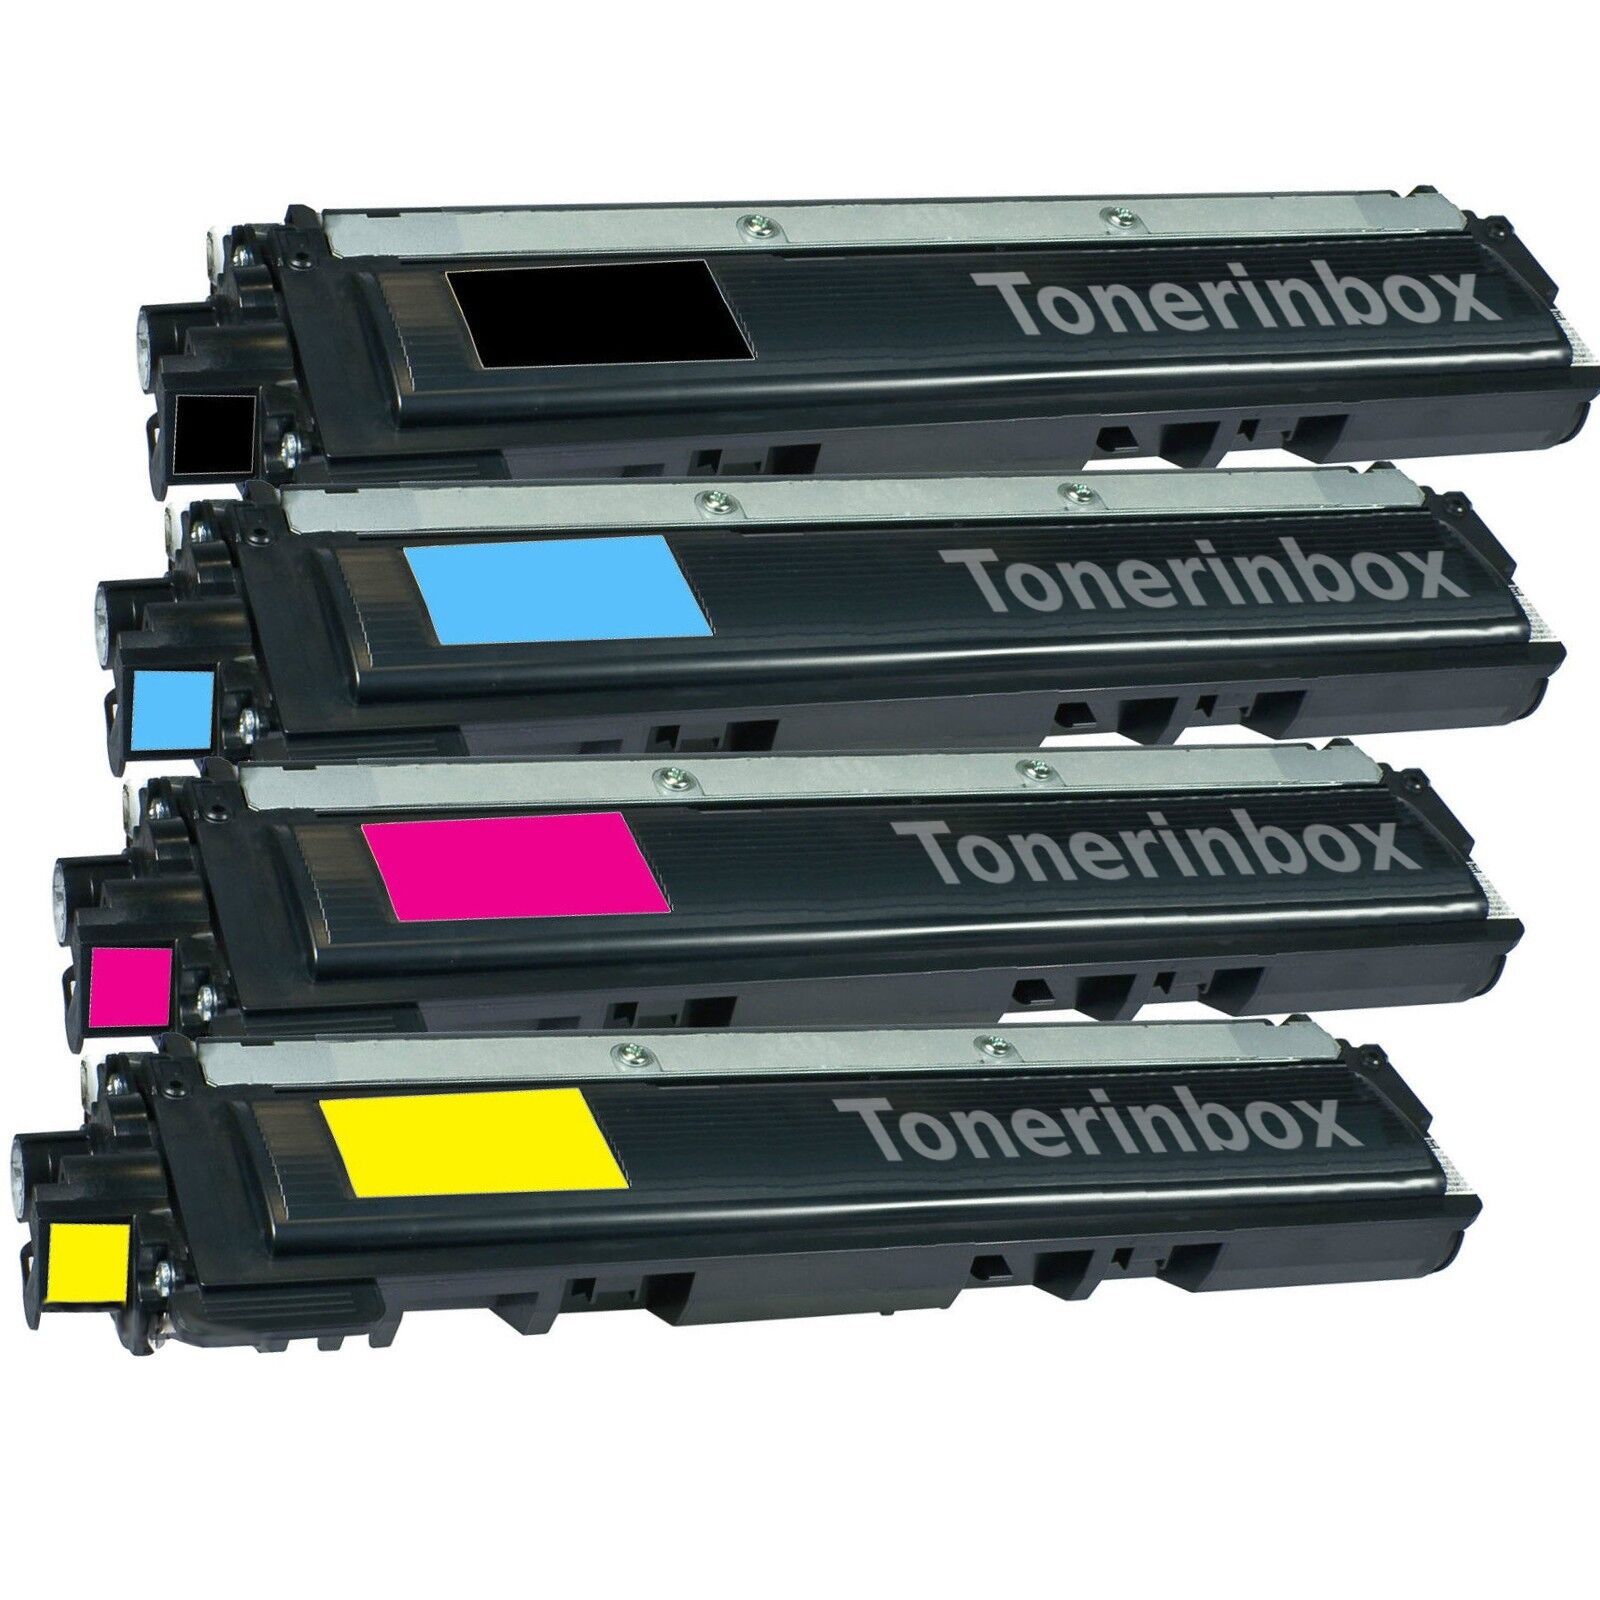 4 Color Toner for Brother TN210 TN-210 HL-3040CN HL-3045CN HL-3070CW HL-3075CW